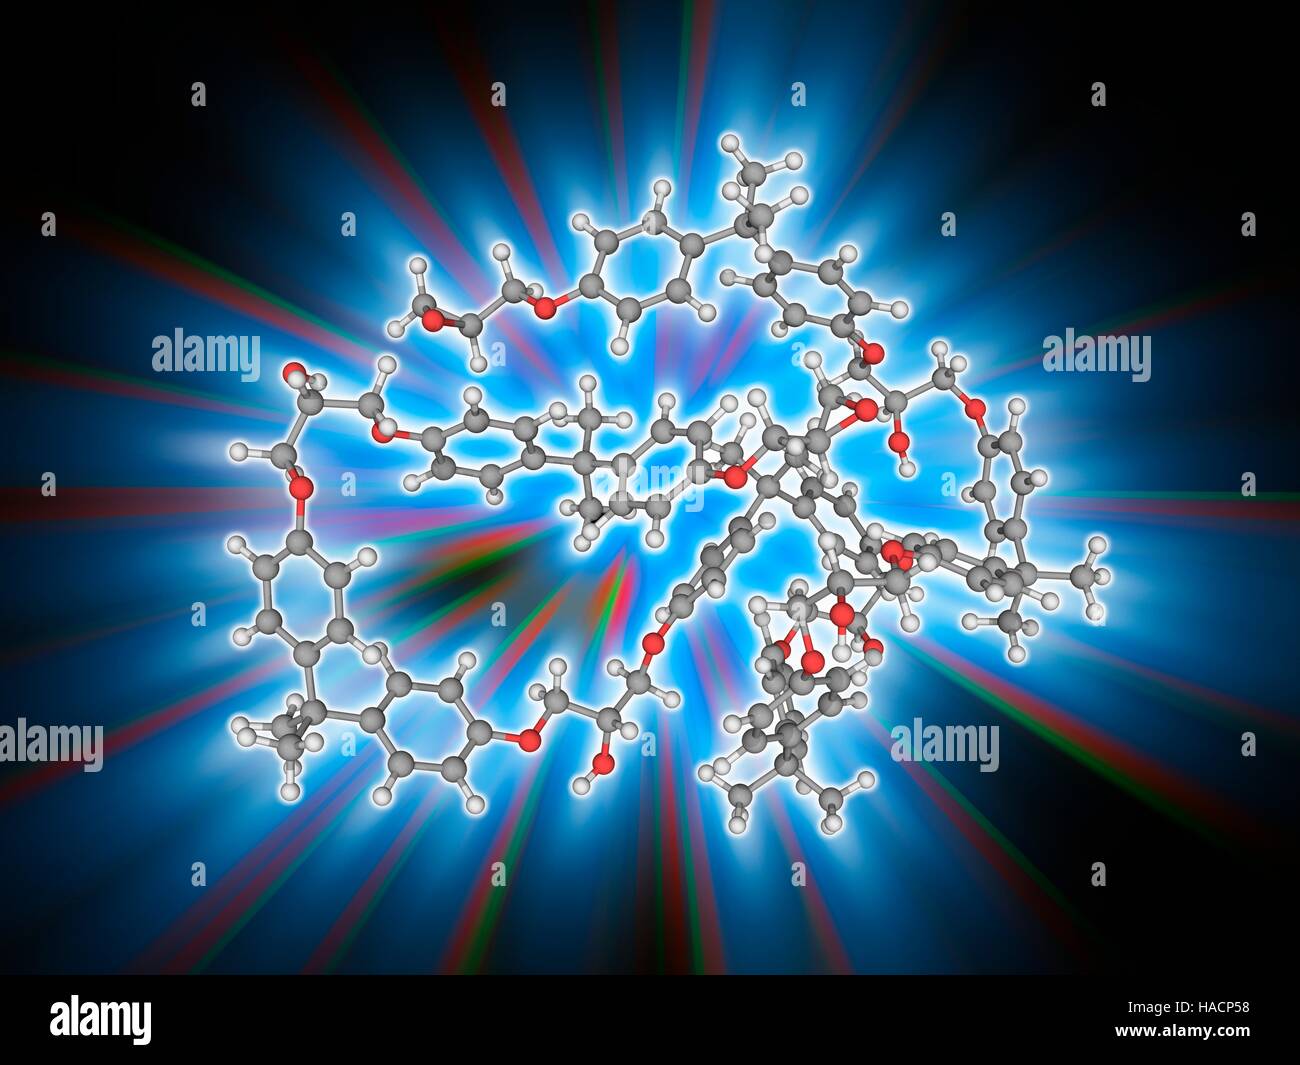 Resina epossidica polimero. Il modello molecolare di varie subunità legate del polimero di resina epossidica, noto anche come poliepossido. Le subunità tipico sono le resine bisfenolo. Questi polimeri sono termoindurenti, nel senso che polimerizzano e reticolare quando miscelati con una poliammina indurente. Gli atomi sono rappresentati da sfere e sono codificati a colori: carbonio (grigio), Idrogeno (bianco) e ossigeno (rosso). Illustrazione. Foto Stock